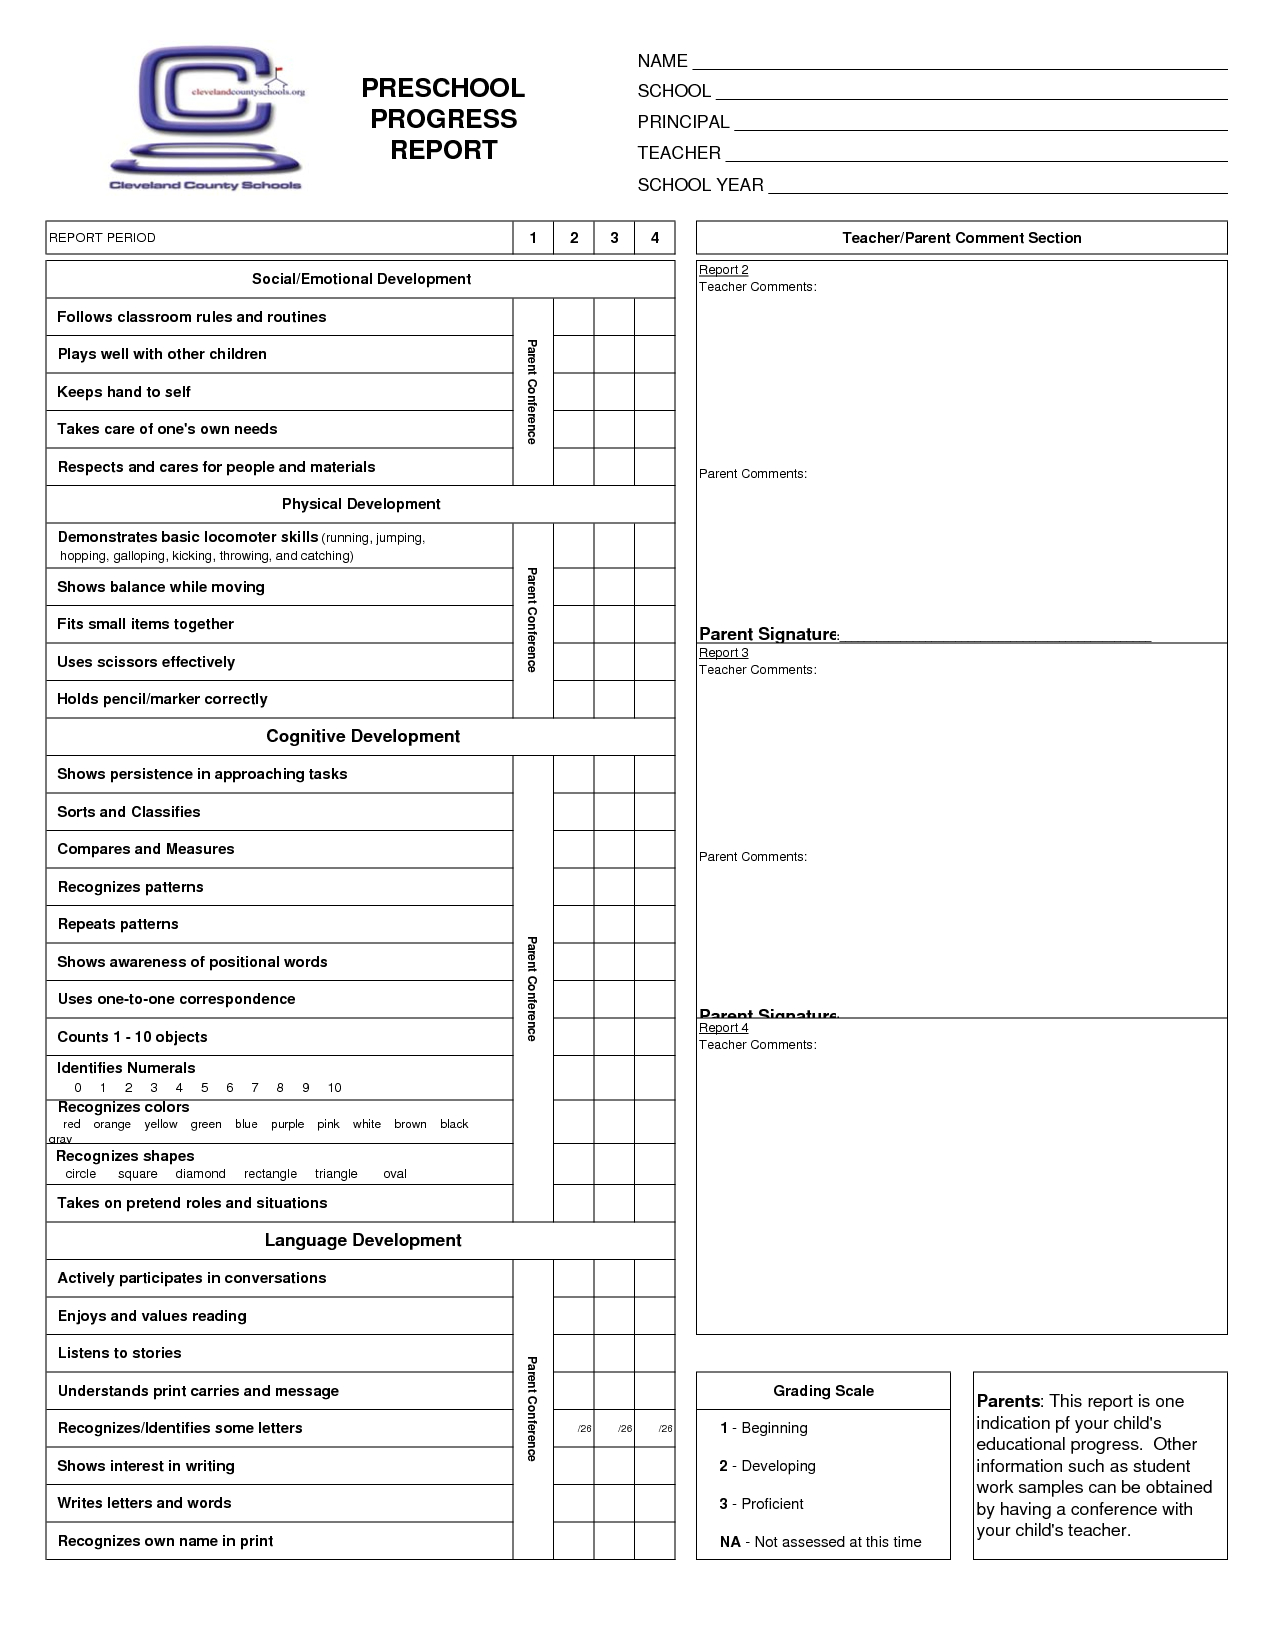 Free Online Report Card Maker Design A Custom Report Card In Canva 